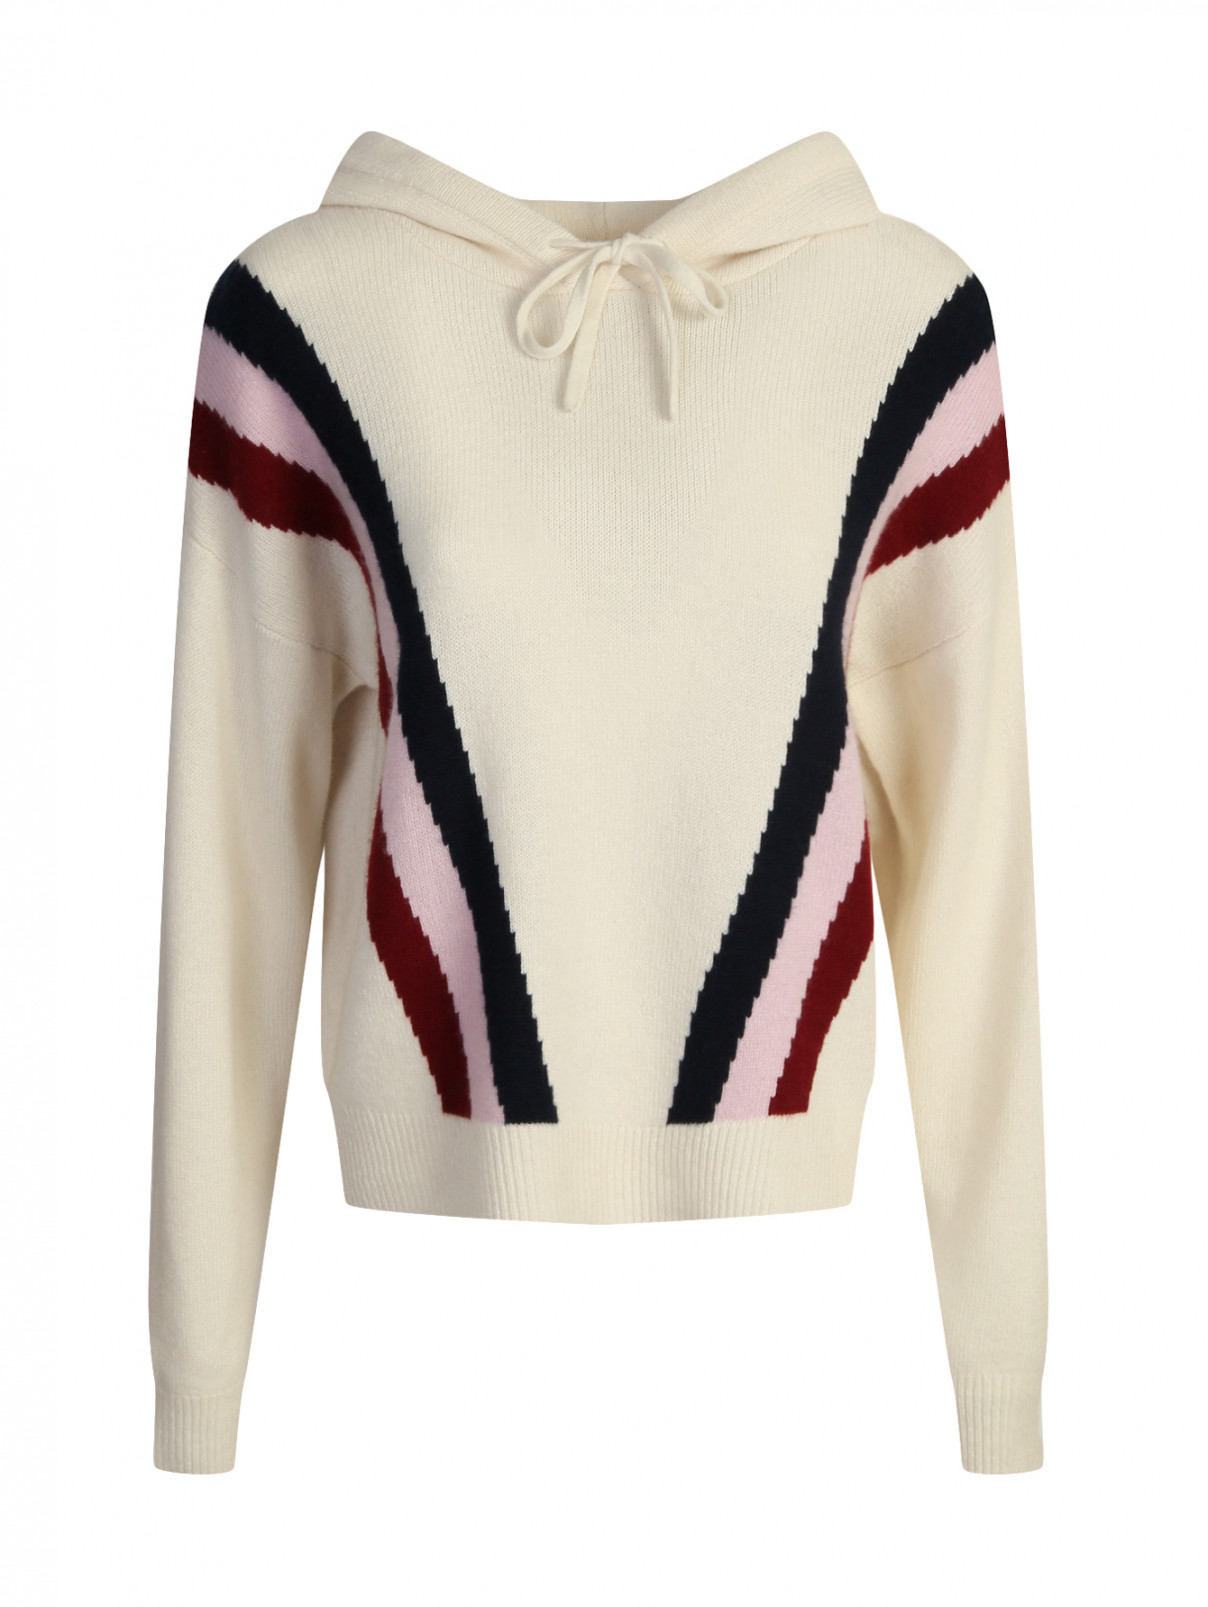 Джемпер из кашемира с капюшоном Juicy Couture  –  Общий вид  – Цвет:  Белый